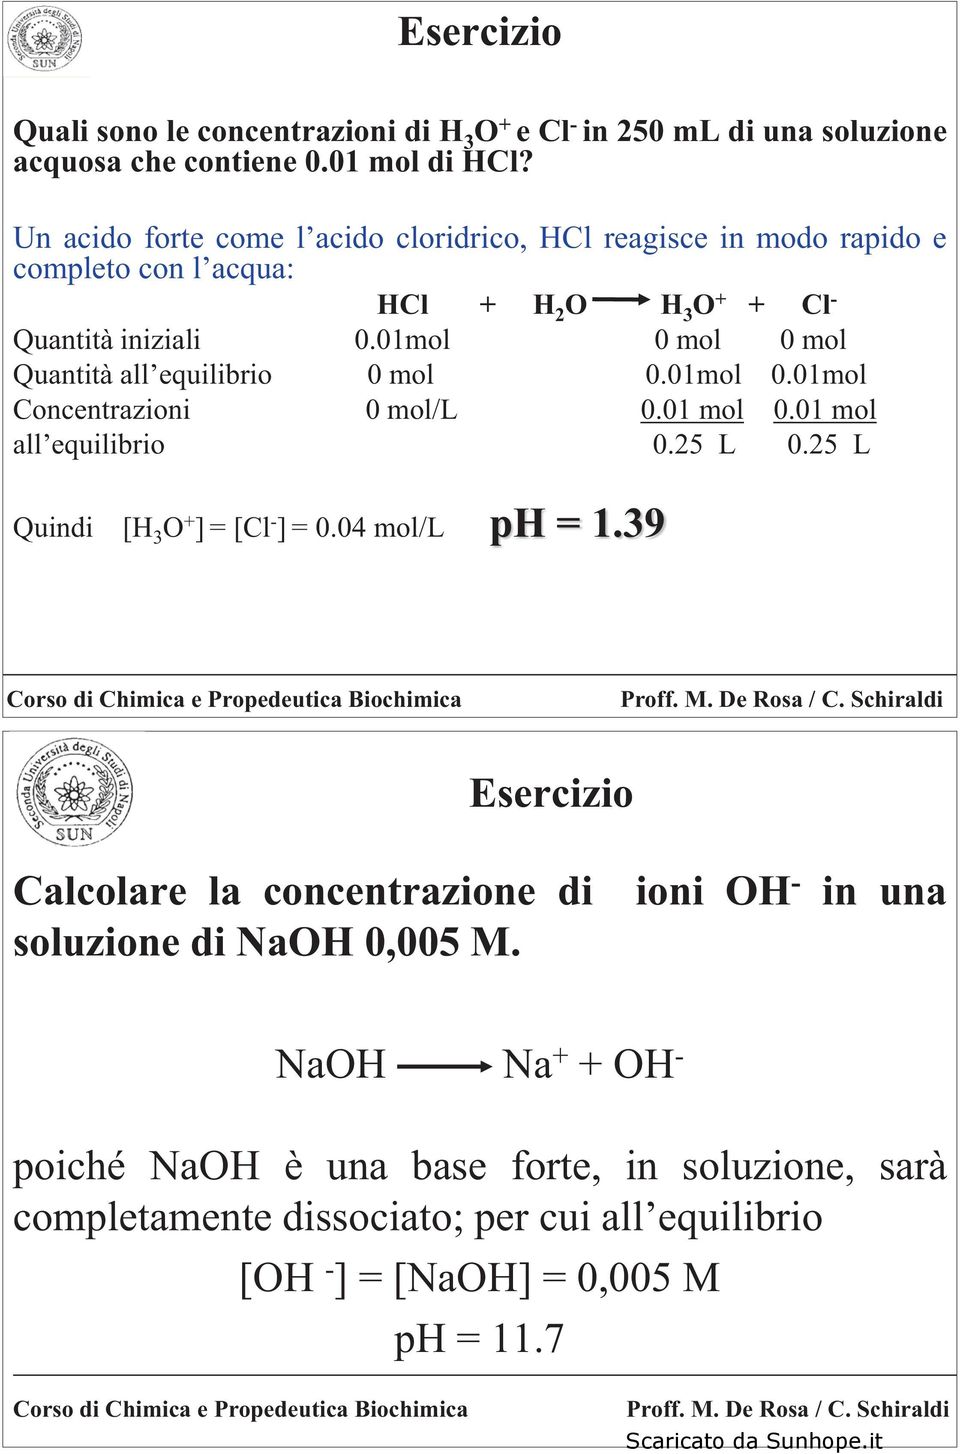 01mol 0 mol 0 mol Quantità all equilibrio 0 mol 0.01mol 0.01mol Concentrazioni 0 mol/l 0.01 mol 0.01 mol all equilibrio 0.25 L 0.25 L Quindi [ 3 O + ]=[Cl - ] = 0.